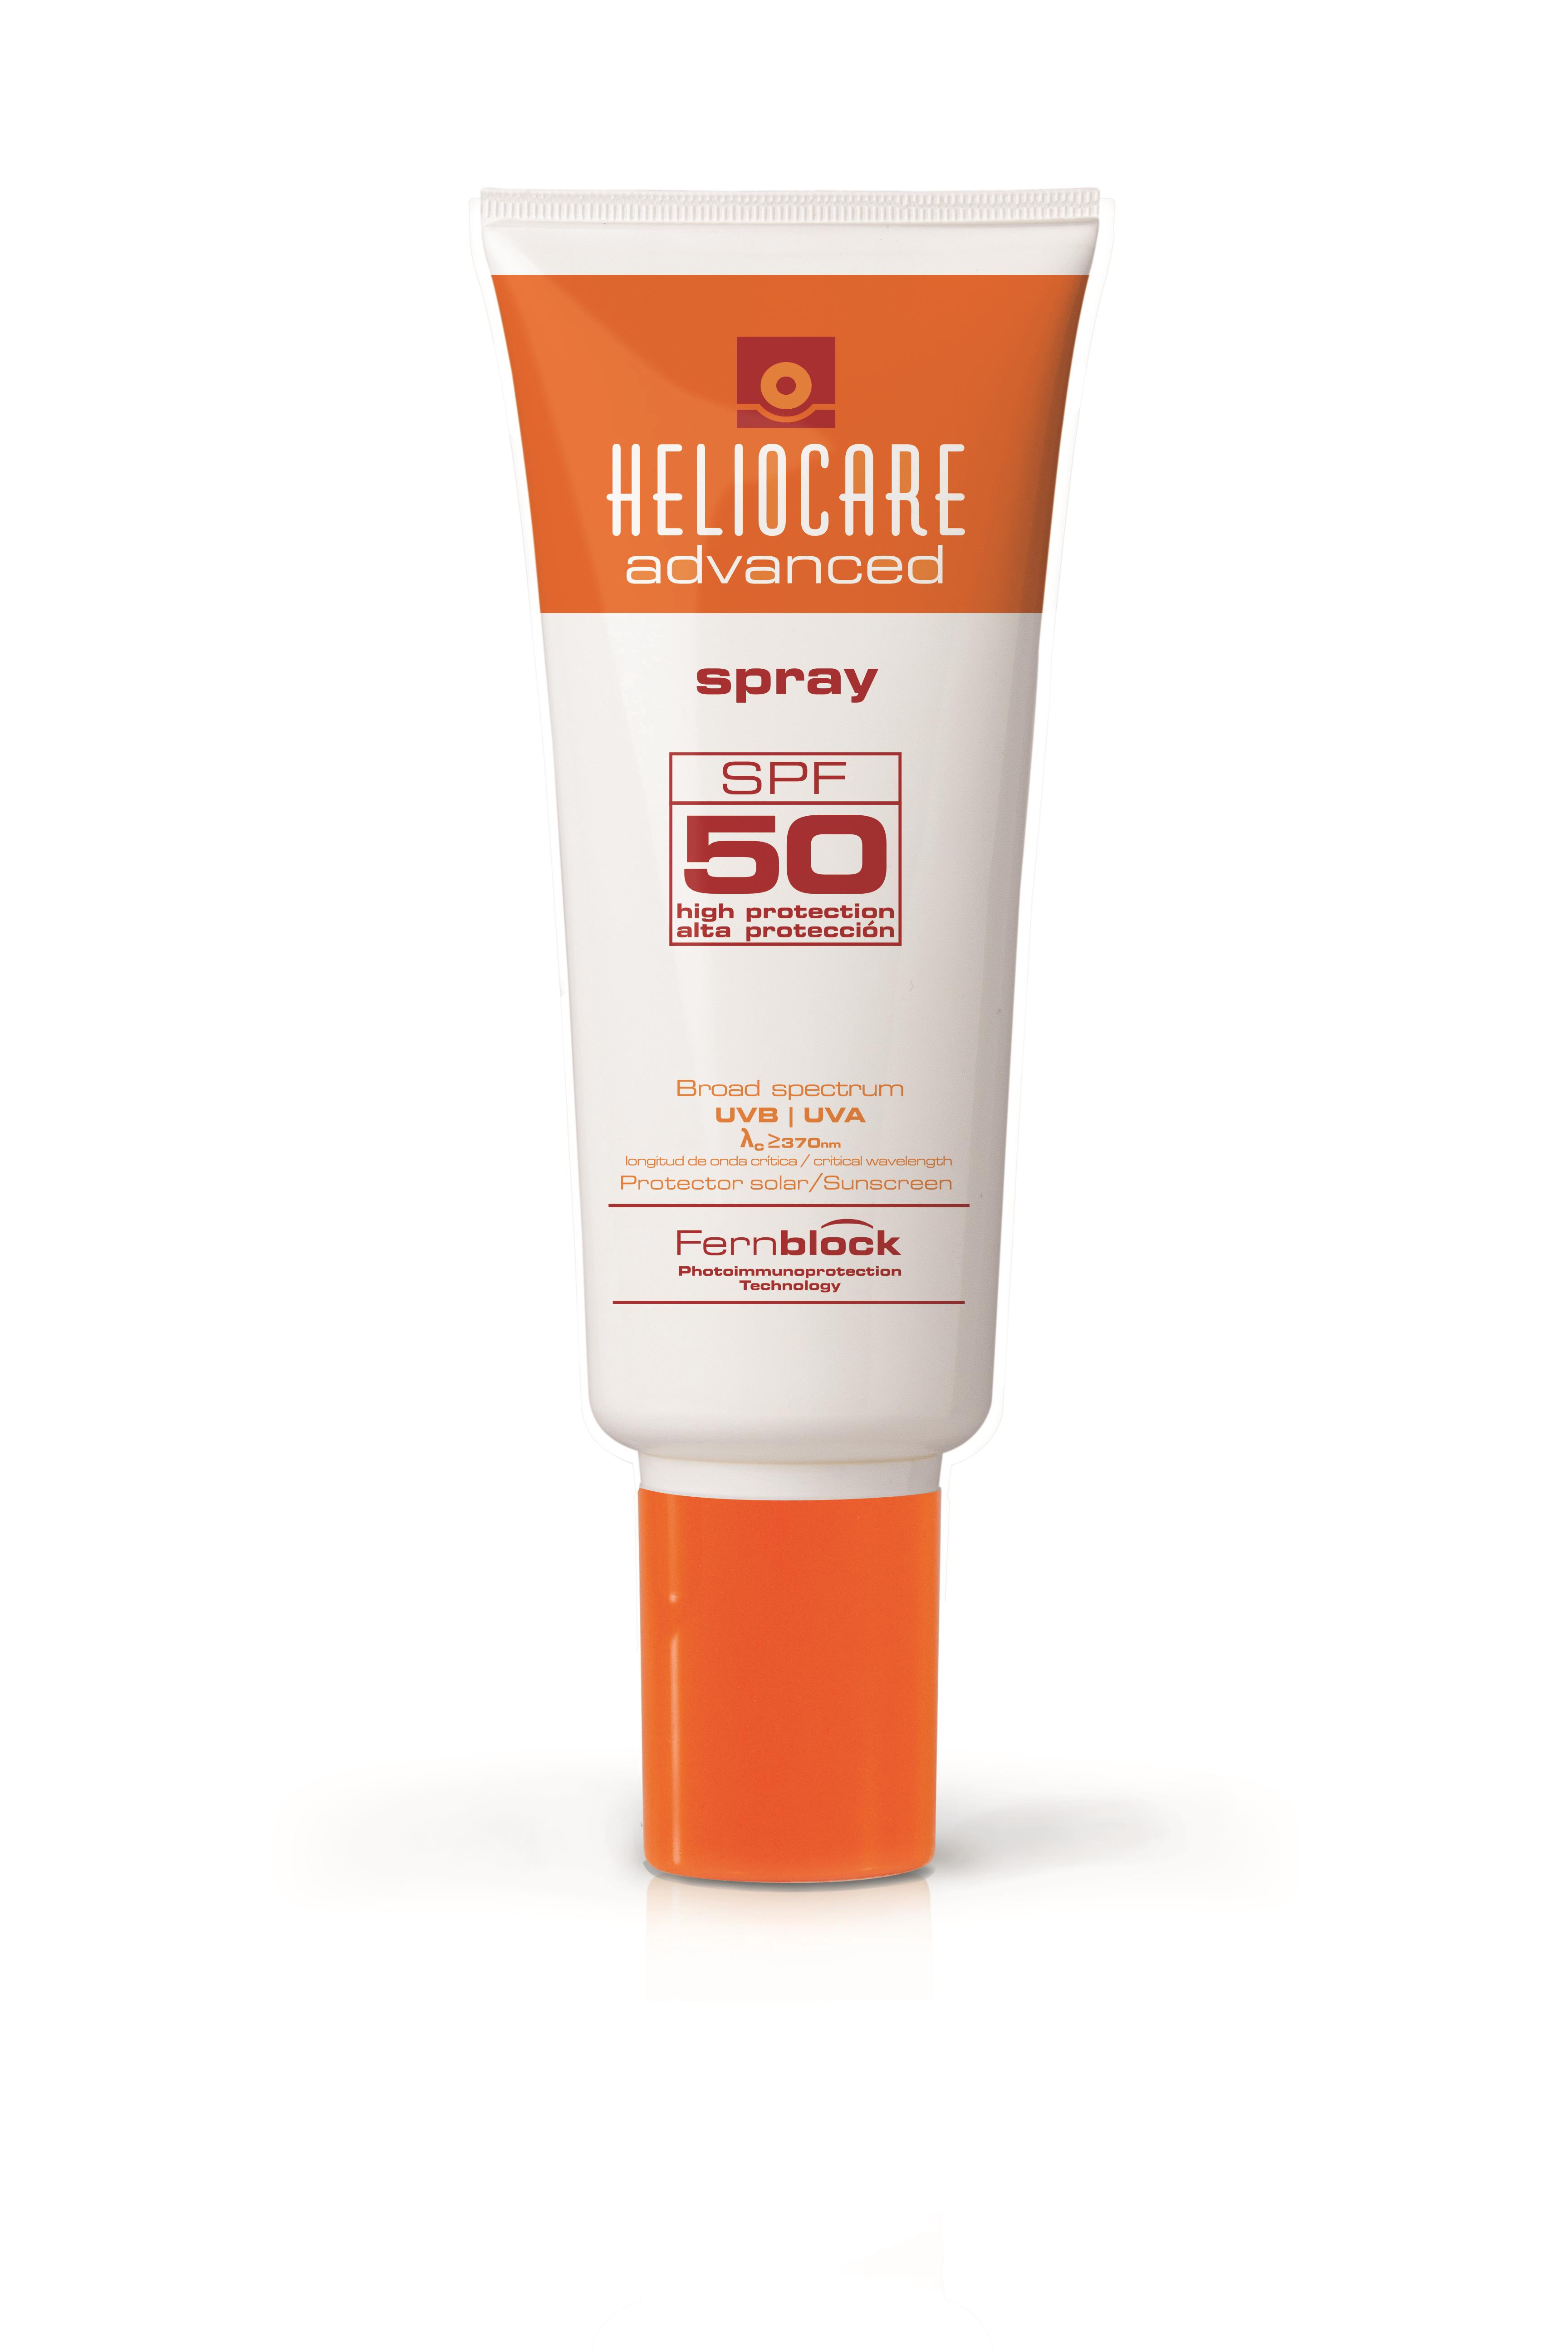 Heliocare Advanced Spray SPF 50